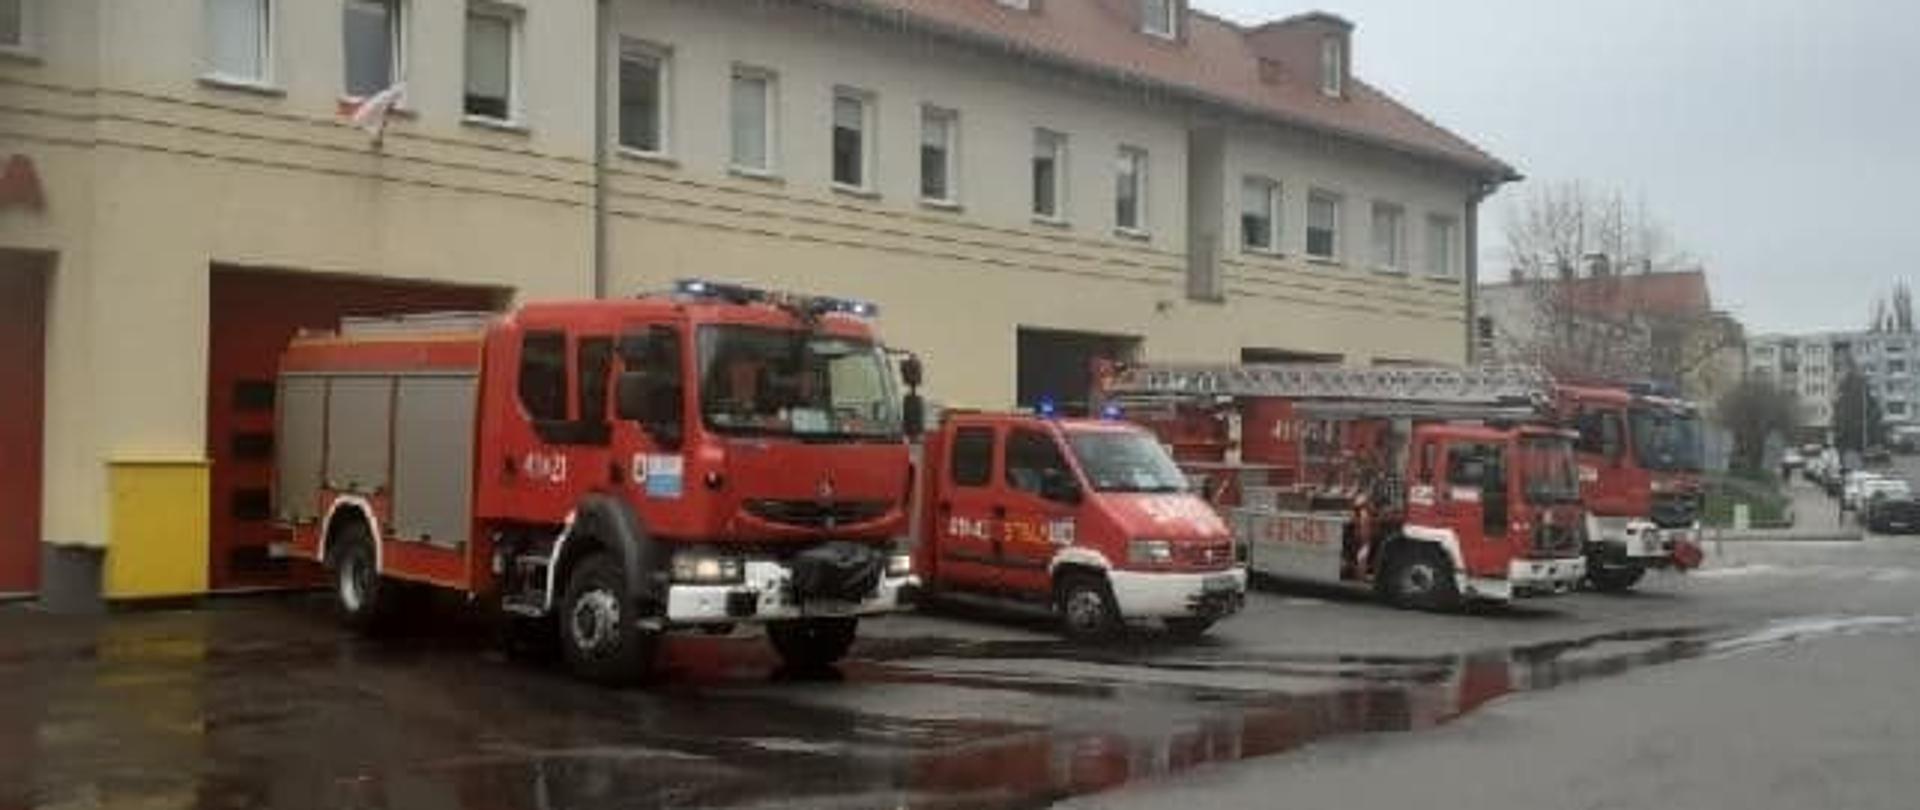 Na fotografii znajdują się wozy strażackie JRG Choszczno, które stoją ustawione obok siebie przed budynkiem komendy.